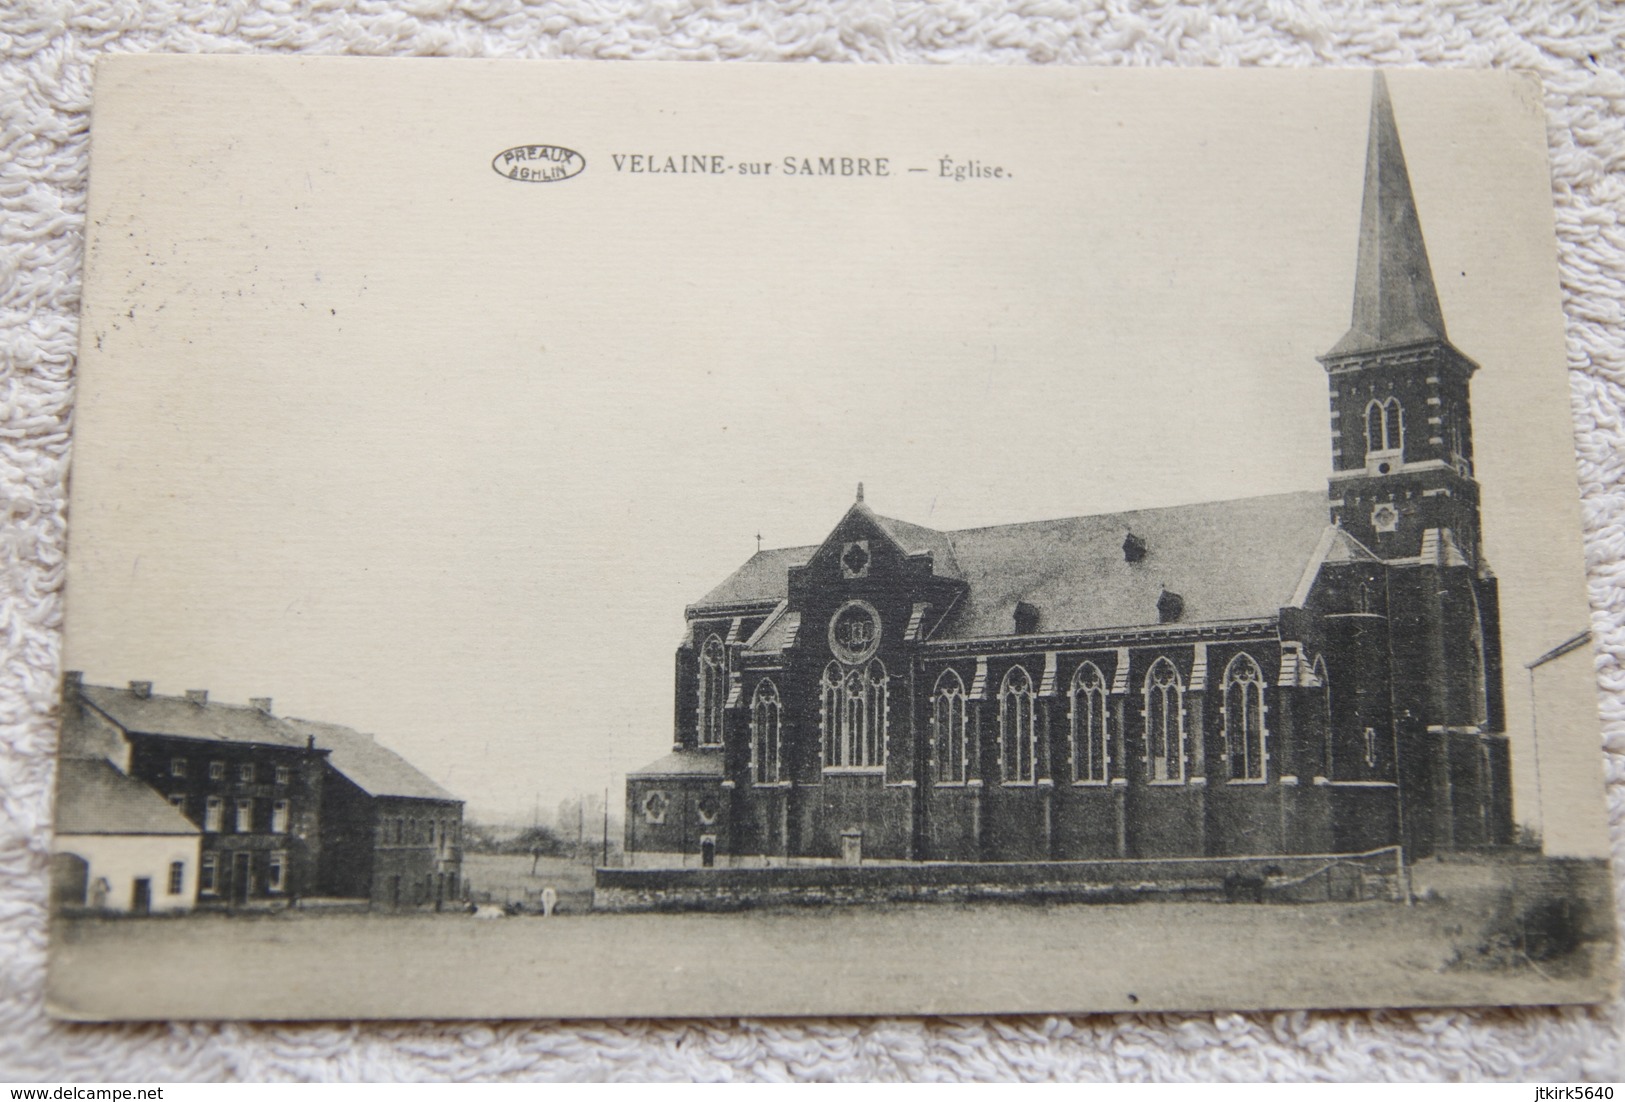 Velaine-sur-Sambre "Eglise" - Sambreville